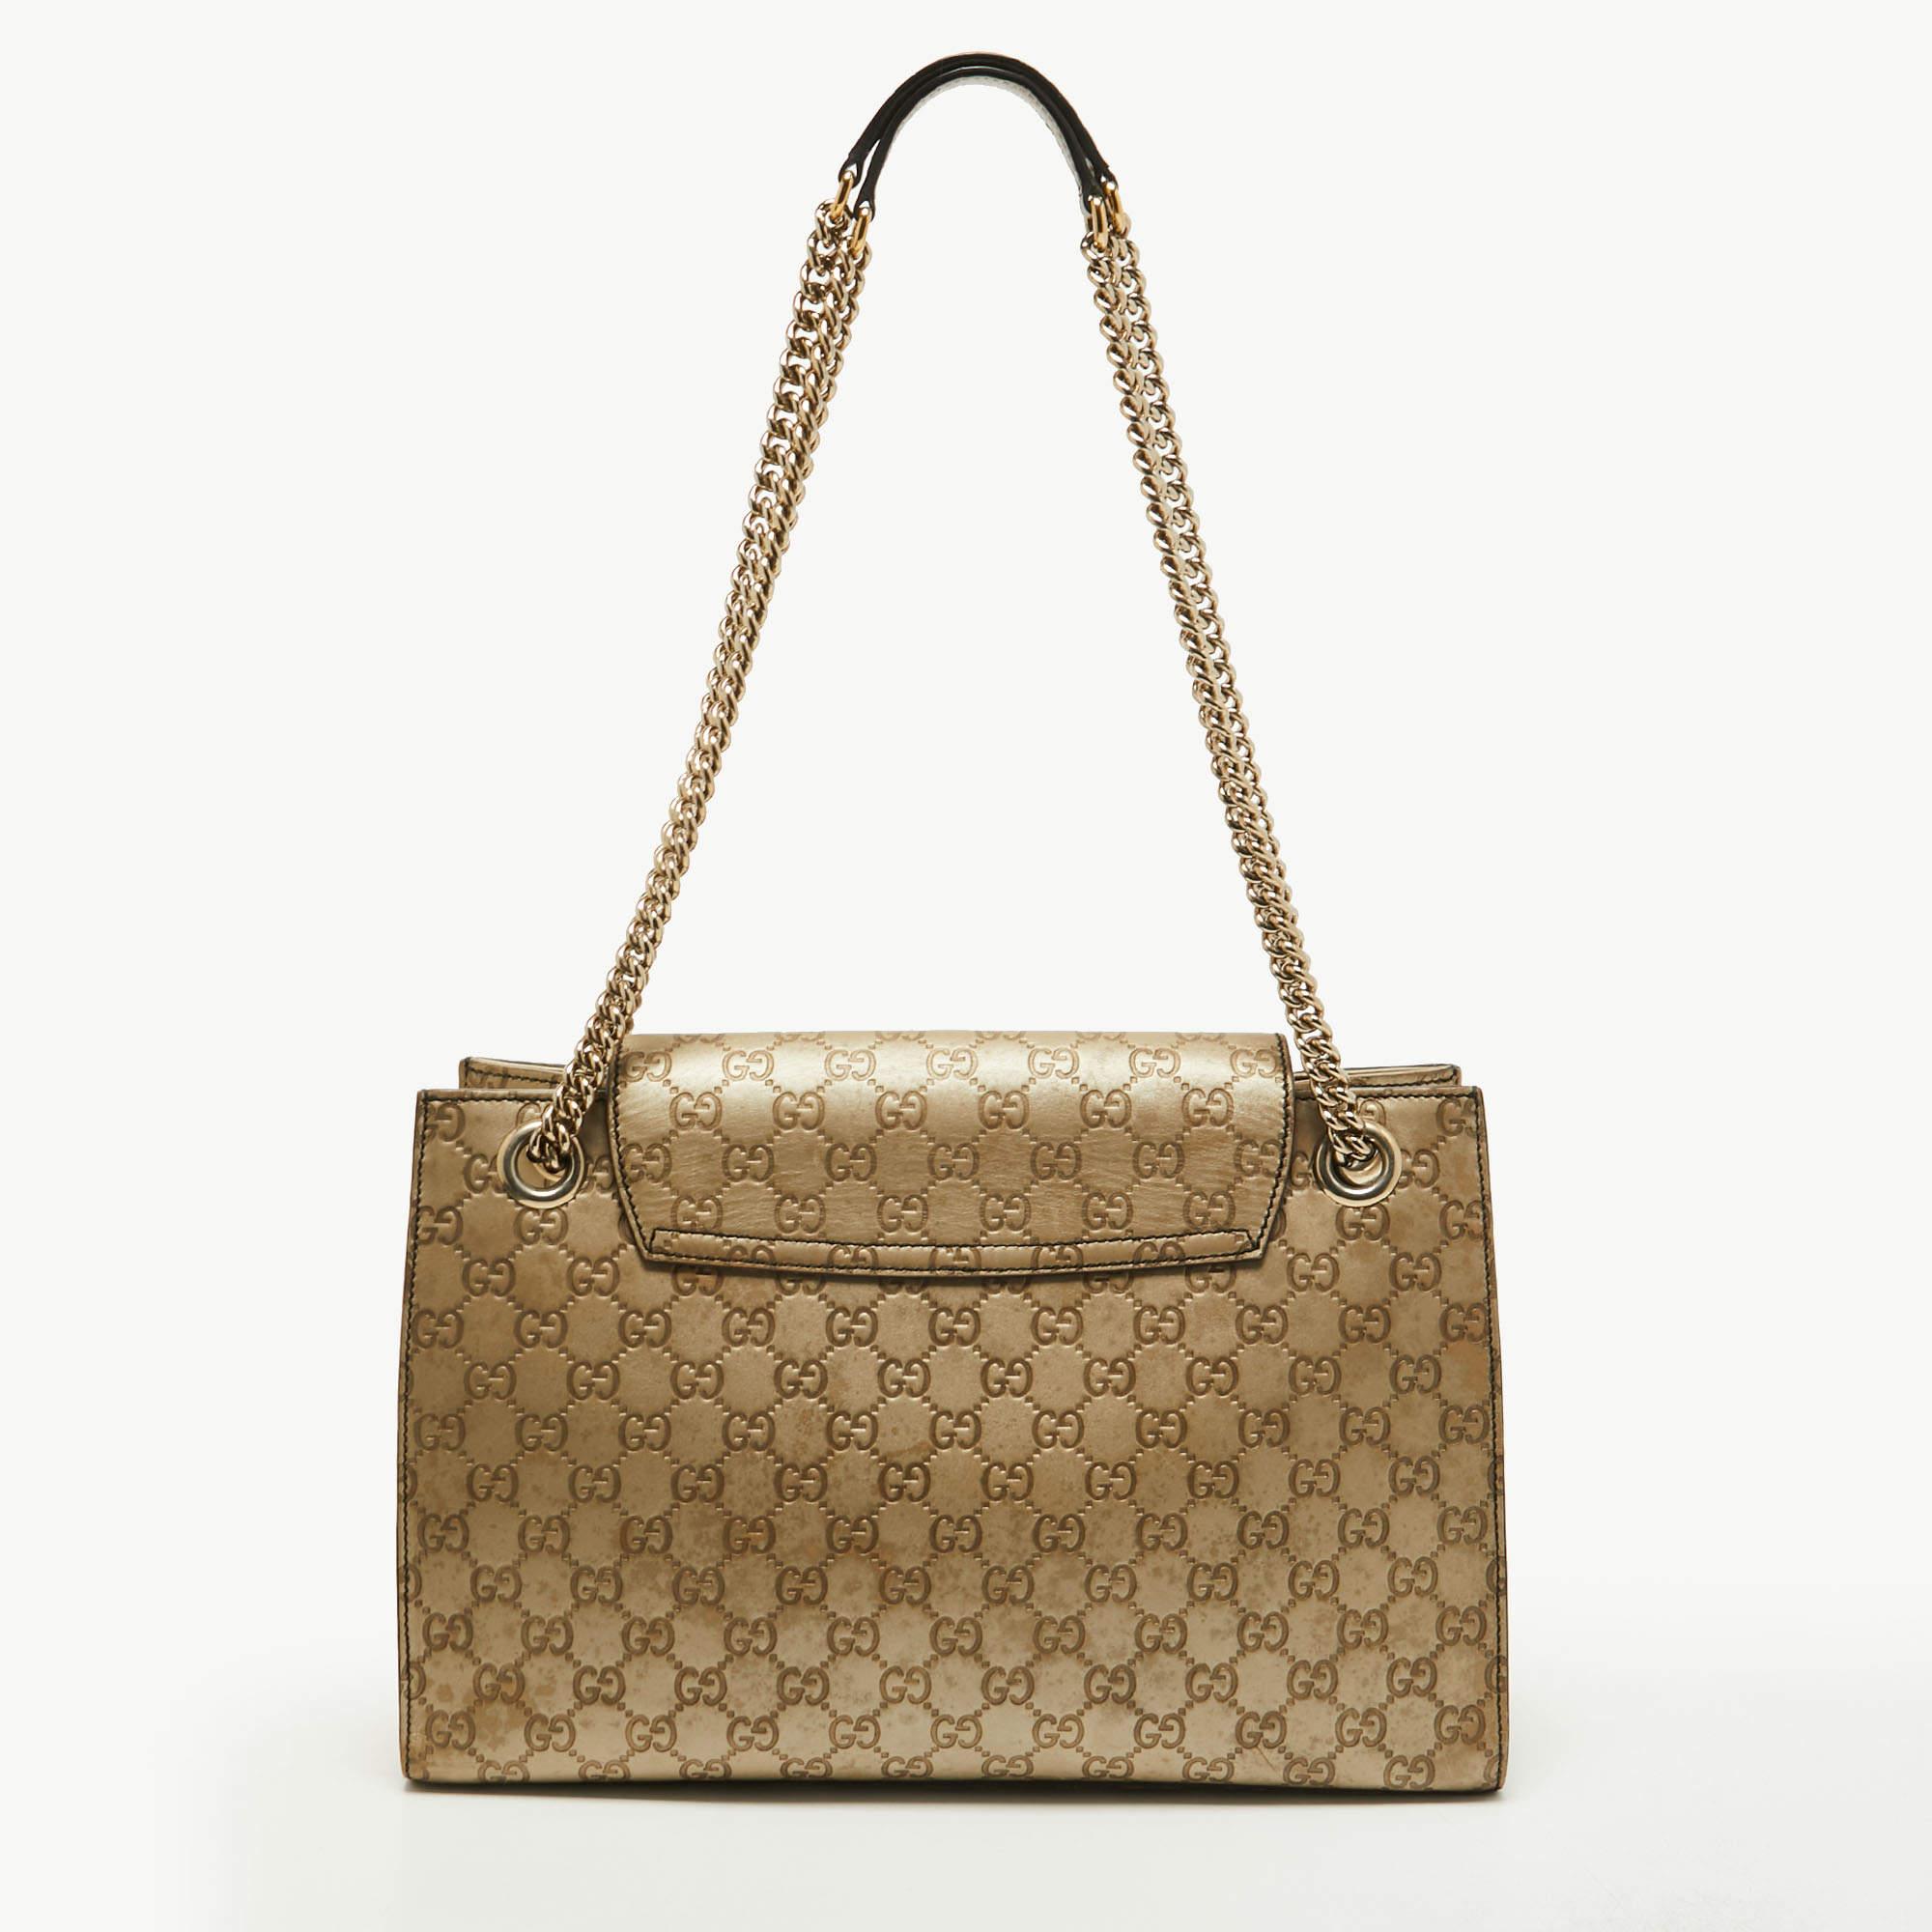 Die Handtaschen von Gucci sind nicht nur gut verarbeitet, sondern auch wegen ihrer hohen Attraktivität sehr begehrt. Diese Emily Chain Umhängetasche ist wie alle Kreationen von Gucci fabelhaft und schrankwürdig. Sie wurde aus Guccissima-Leder